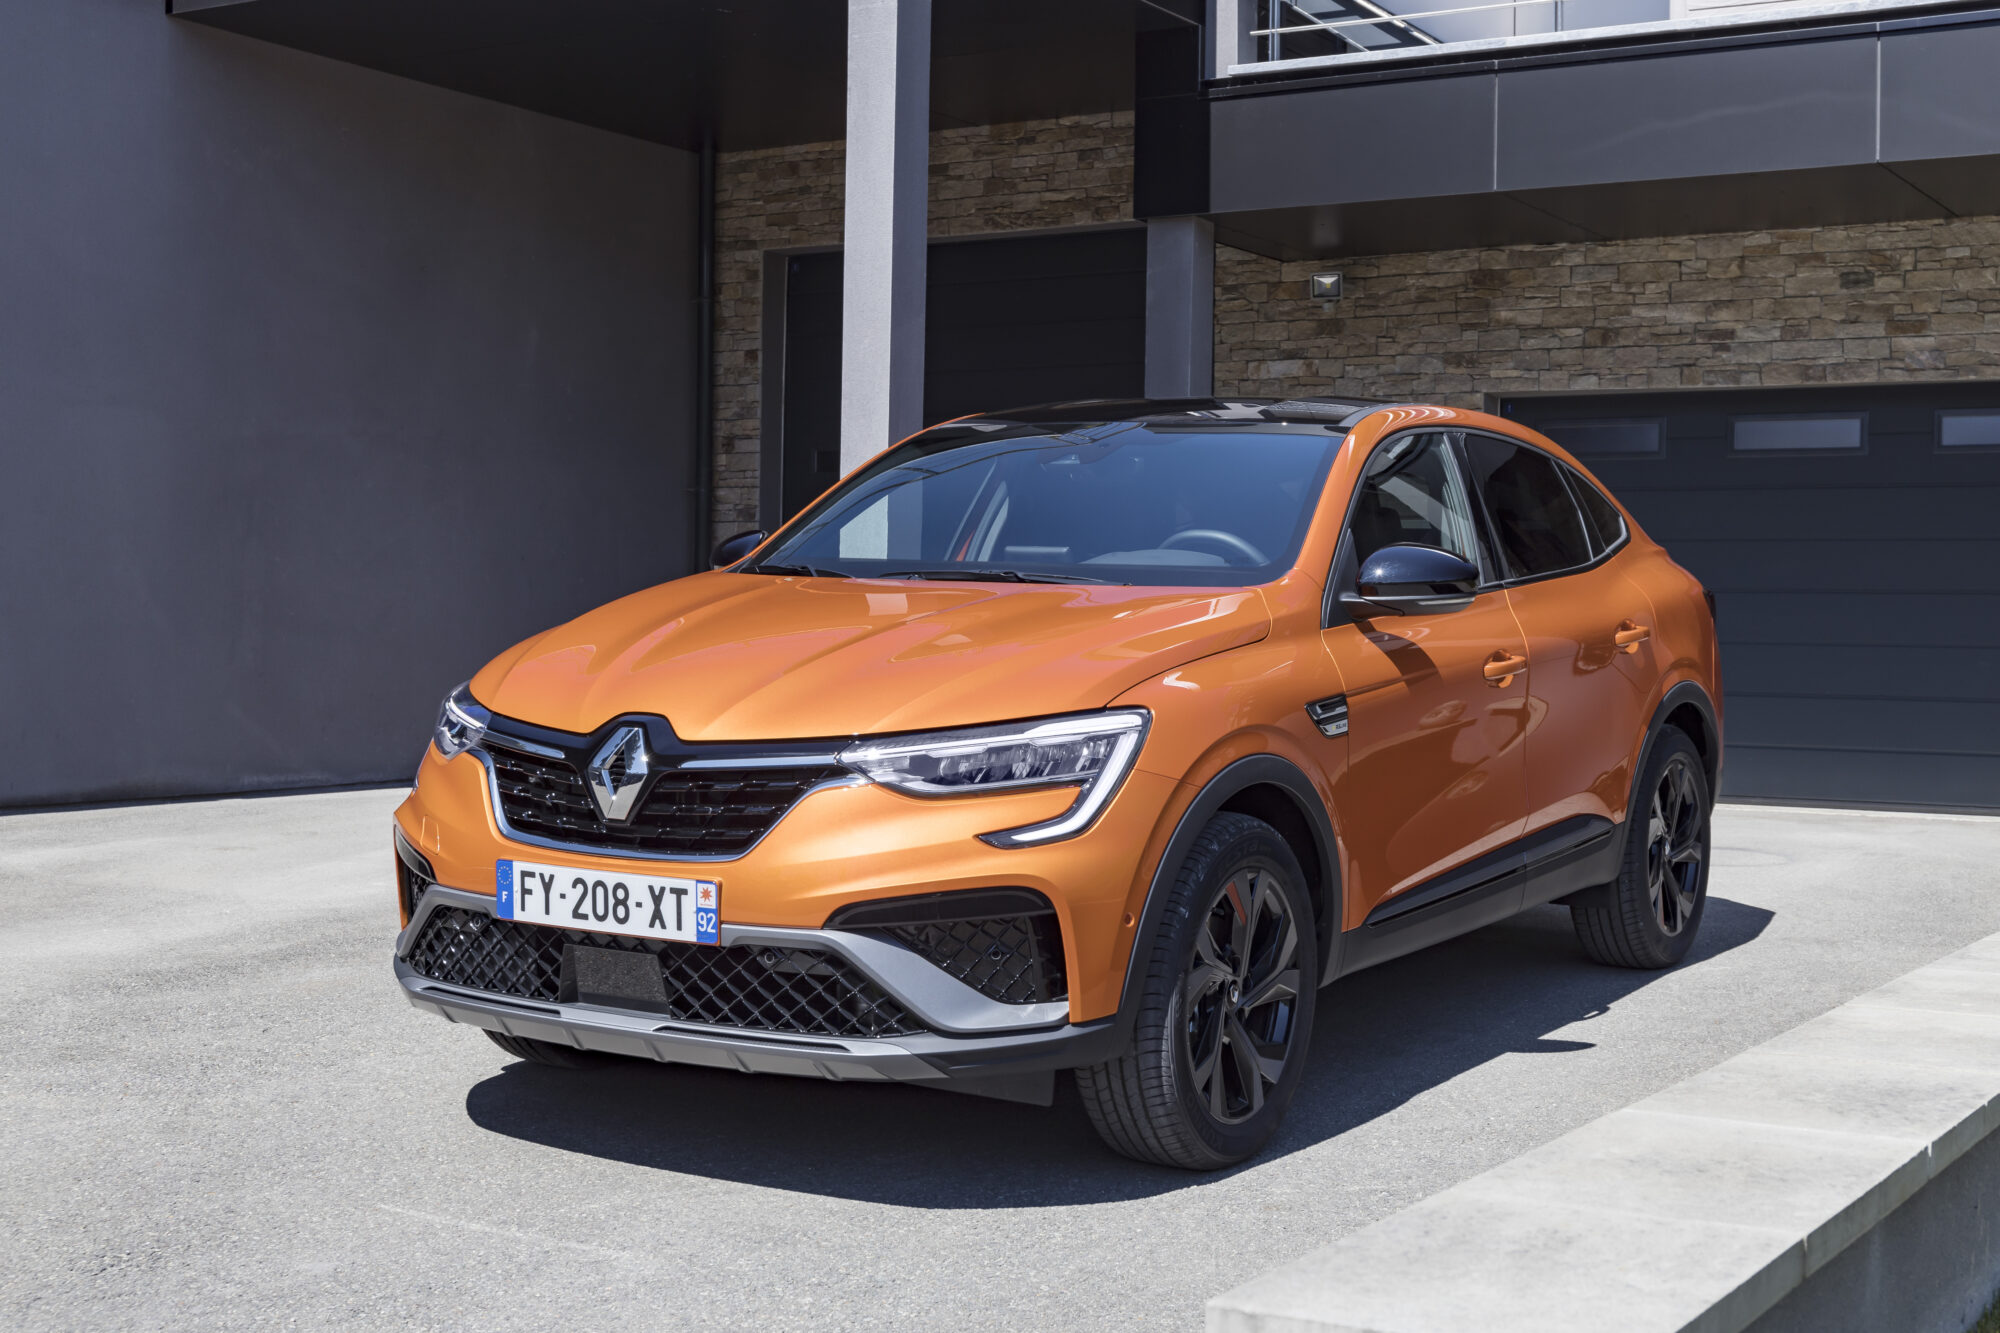 2021 - New Renault ARKANA E-TECH test-drives